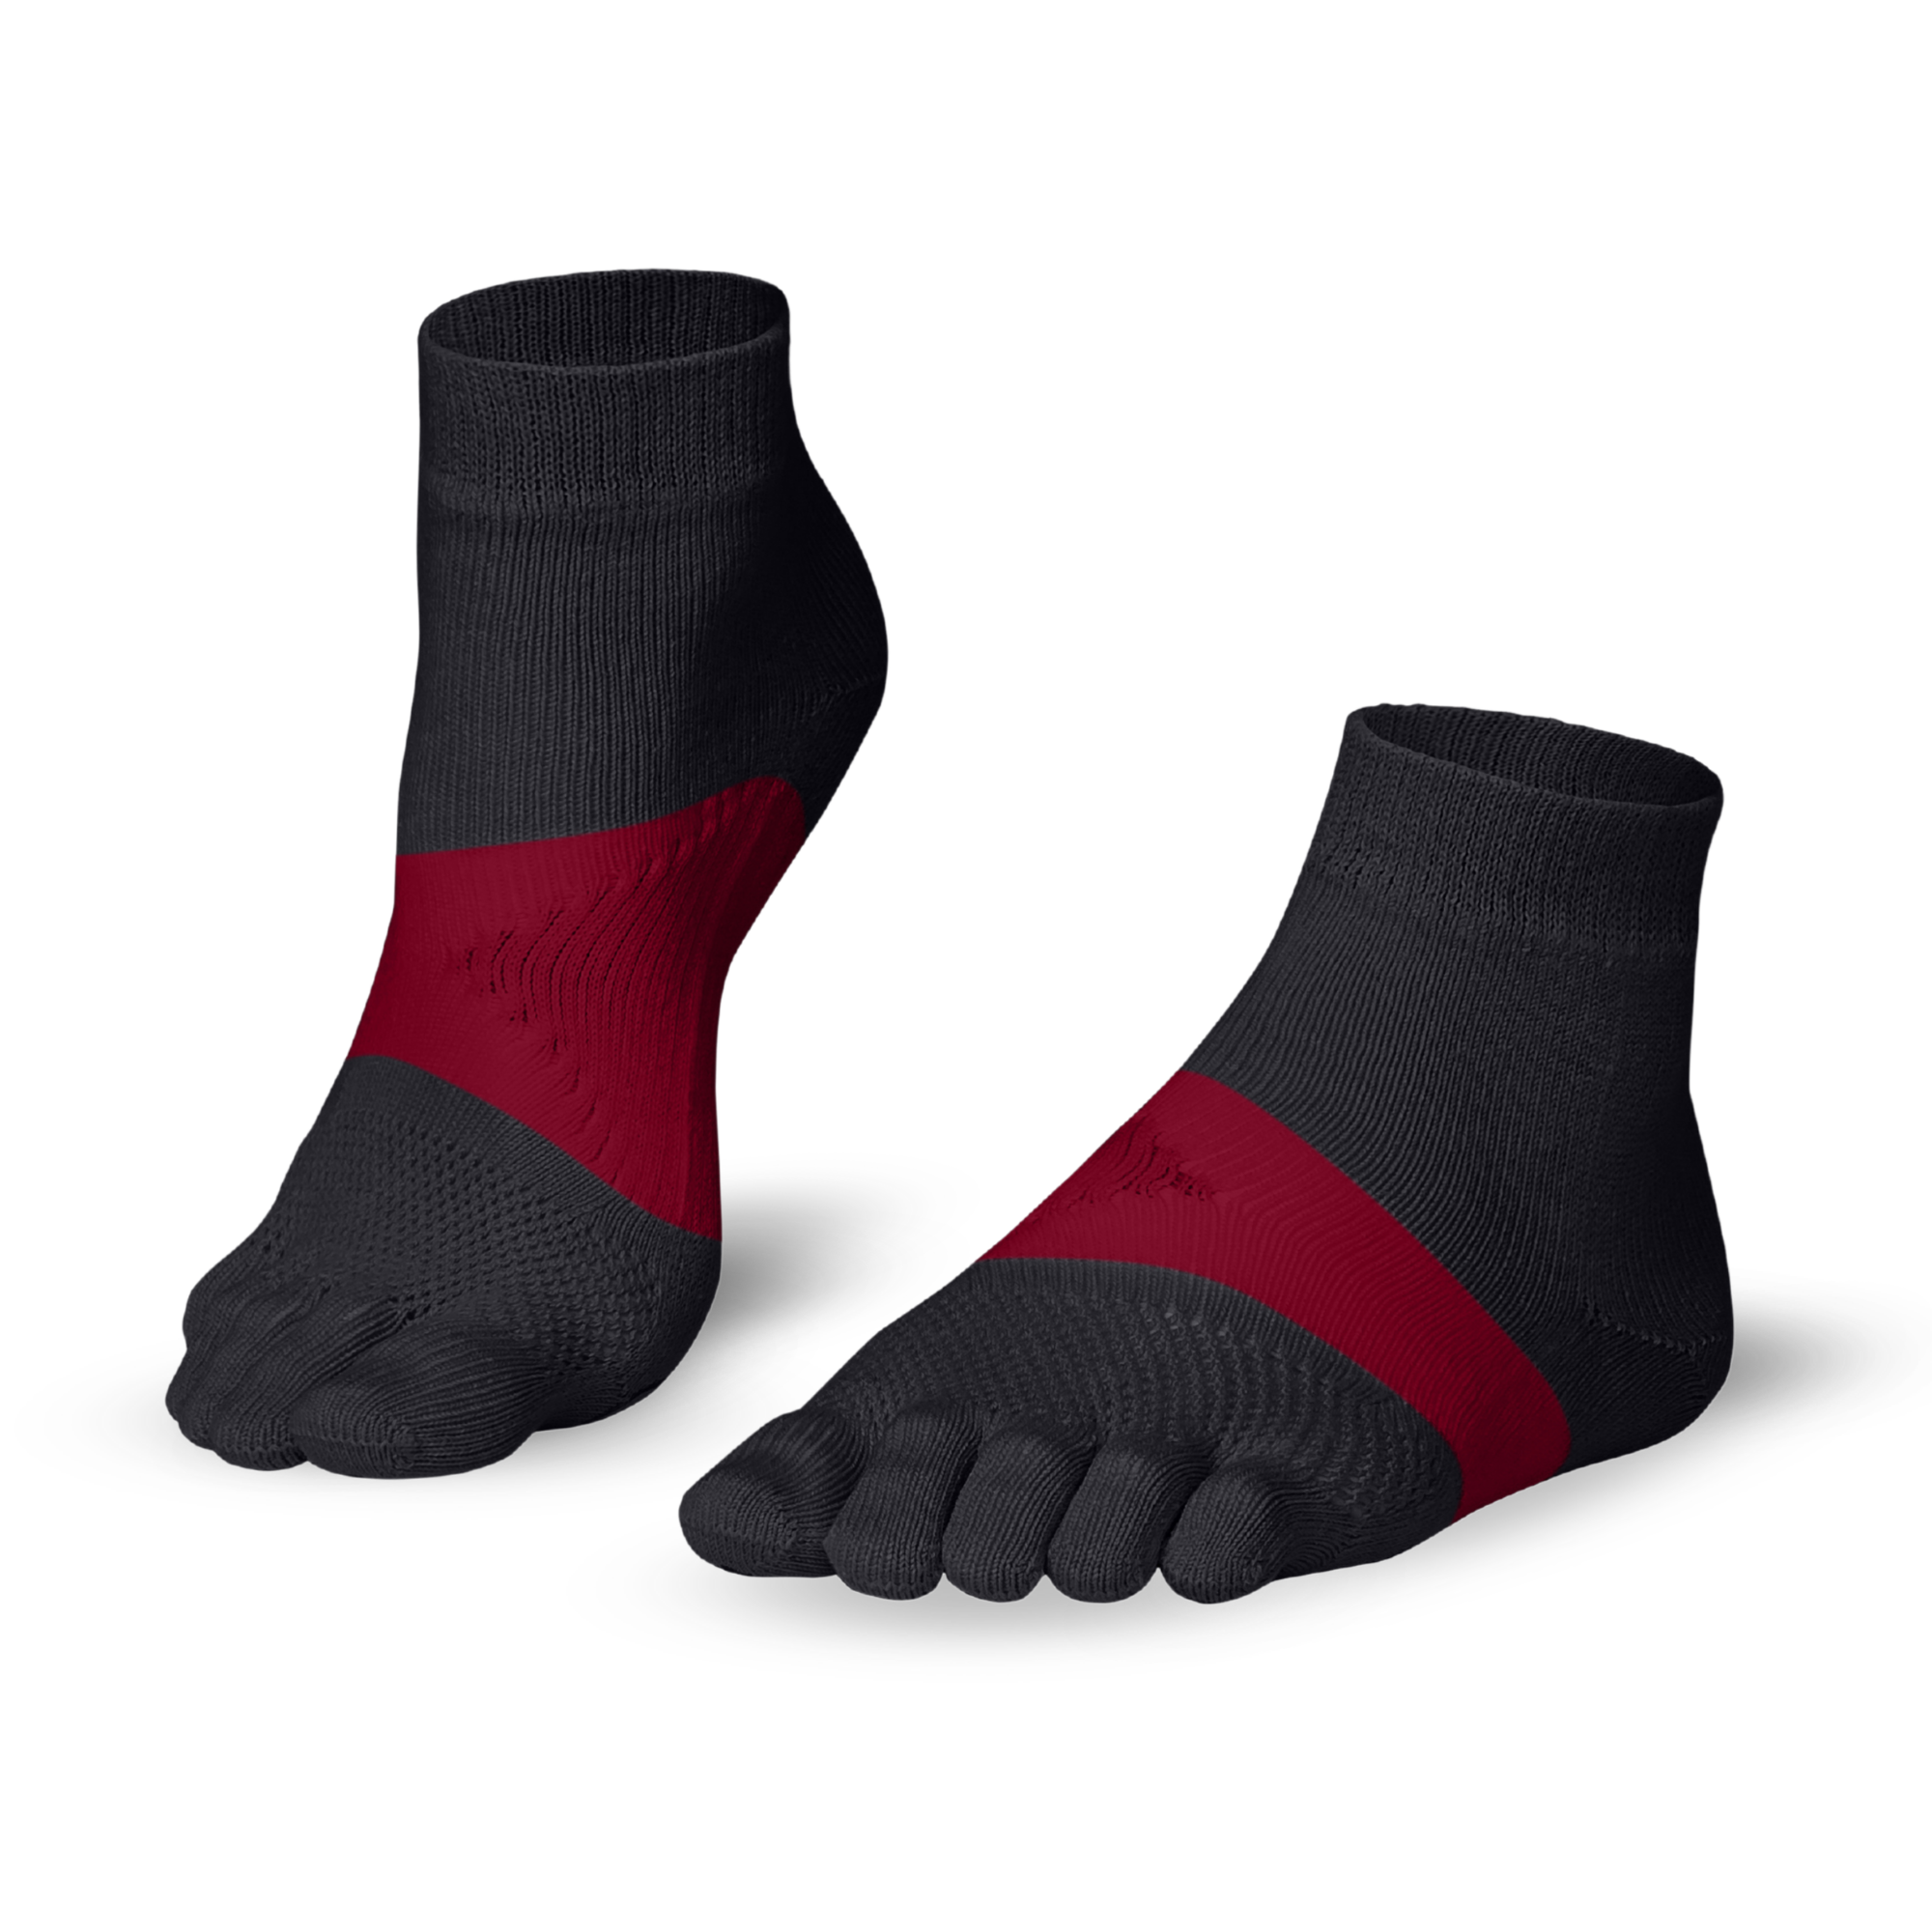 Running TS course à piedchaussettes à orteils - les essentiels de la course à piedchaussettes à orteils de Knitido : gris / rouge carmin